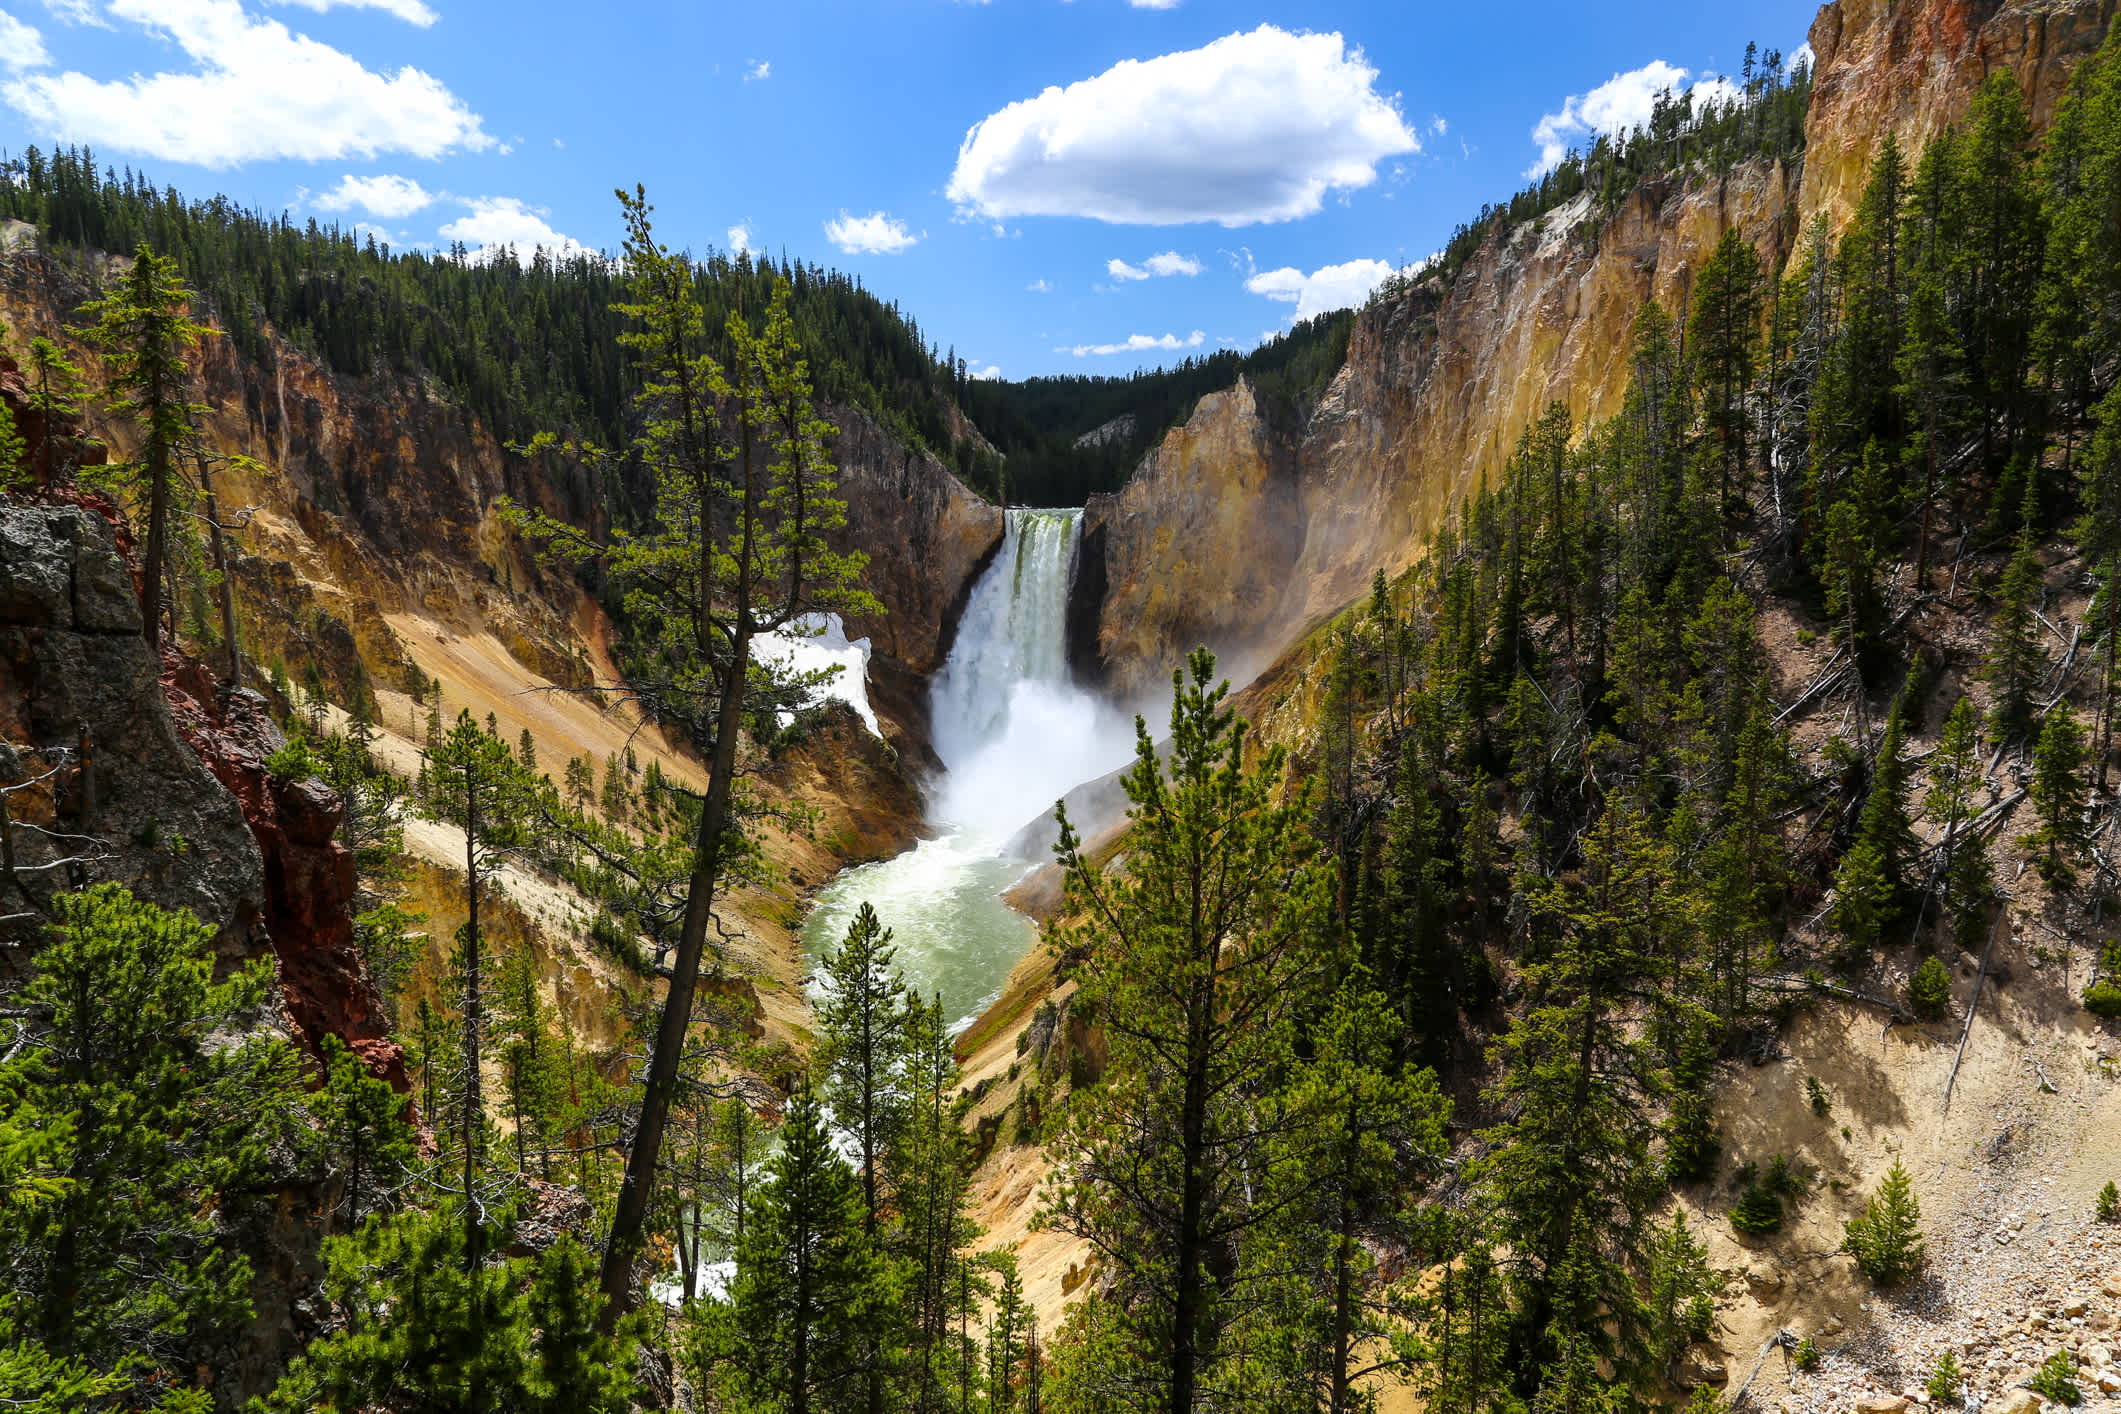 Lower Falls, la plus grande chute d'eau de Yellowstone, est la plus célèbre du parc avec ses 308 pieds et se trouve dans le Grand Canyon de Yellowstone.